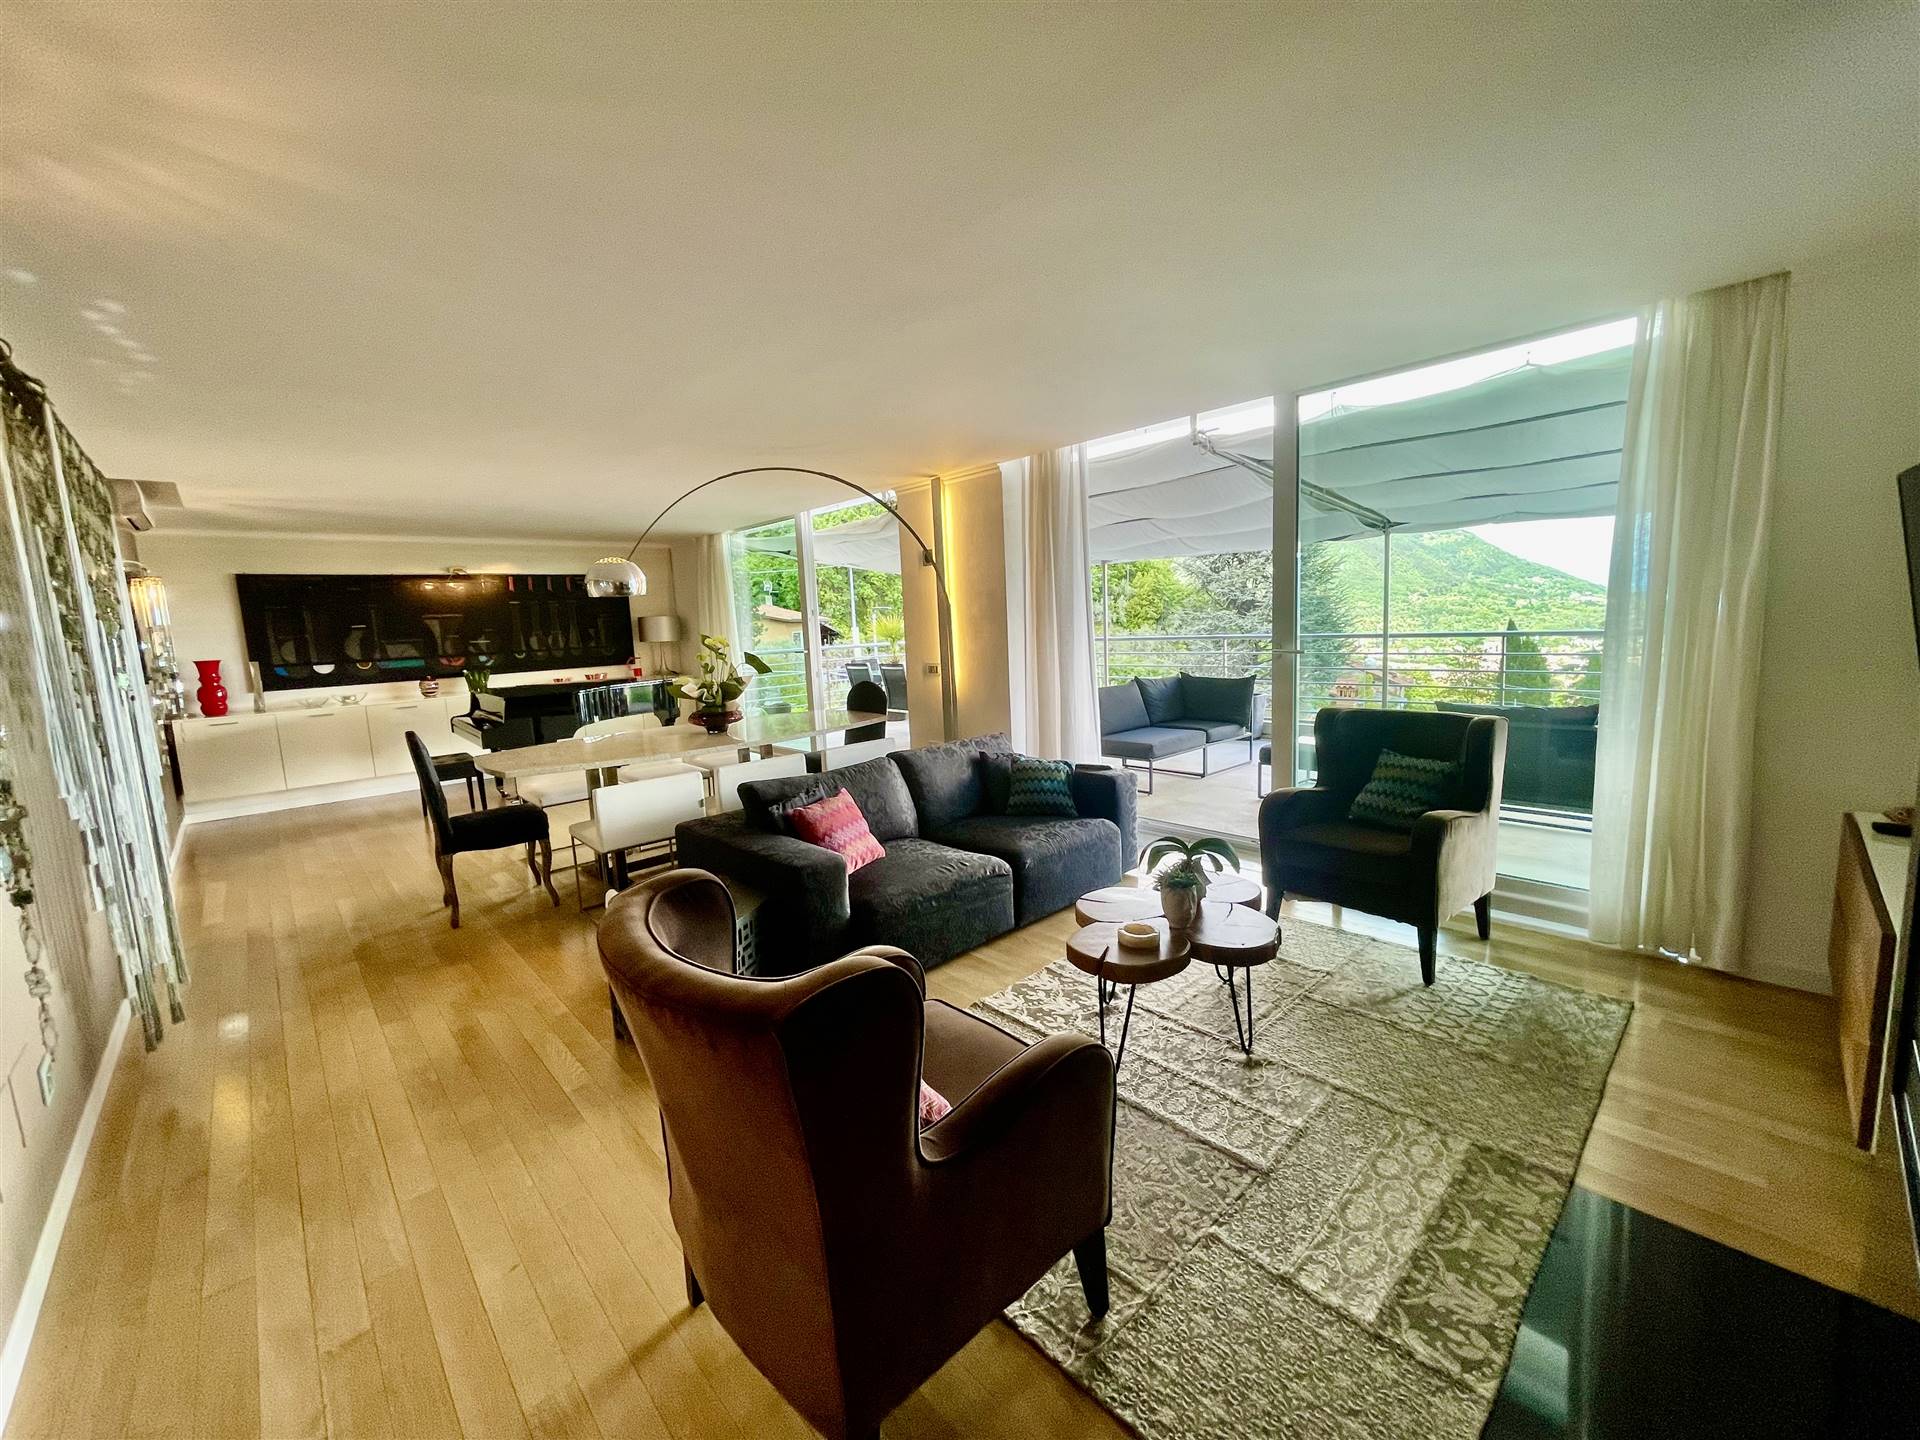 Esclusiva proprietà in zona residenziale, tranquilla da cui raggiungere comodamente le principali località del lago di Garda, proponiamo villa 